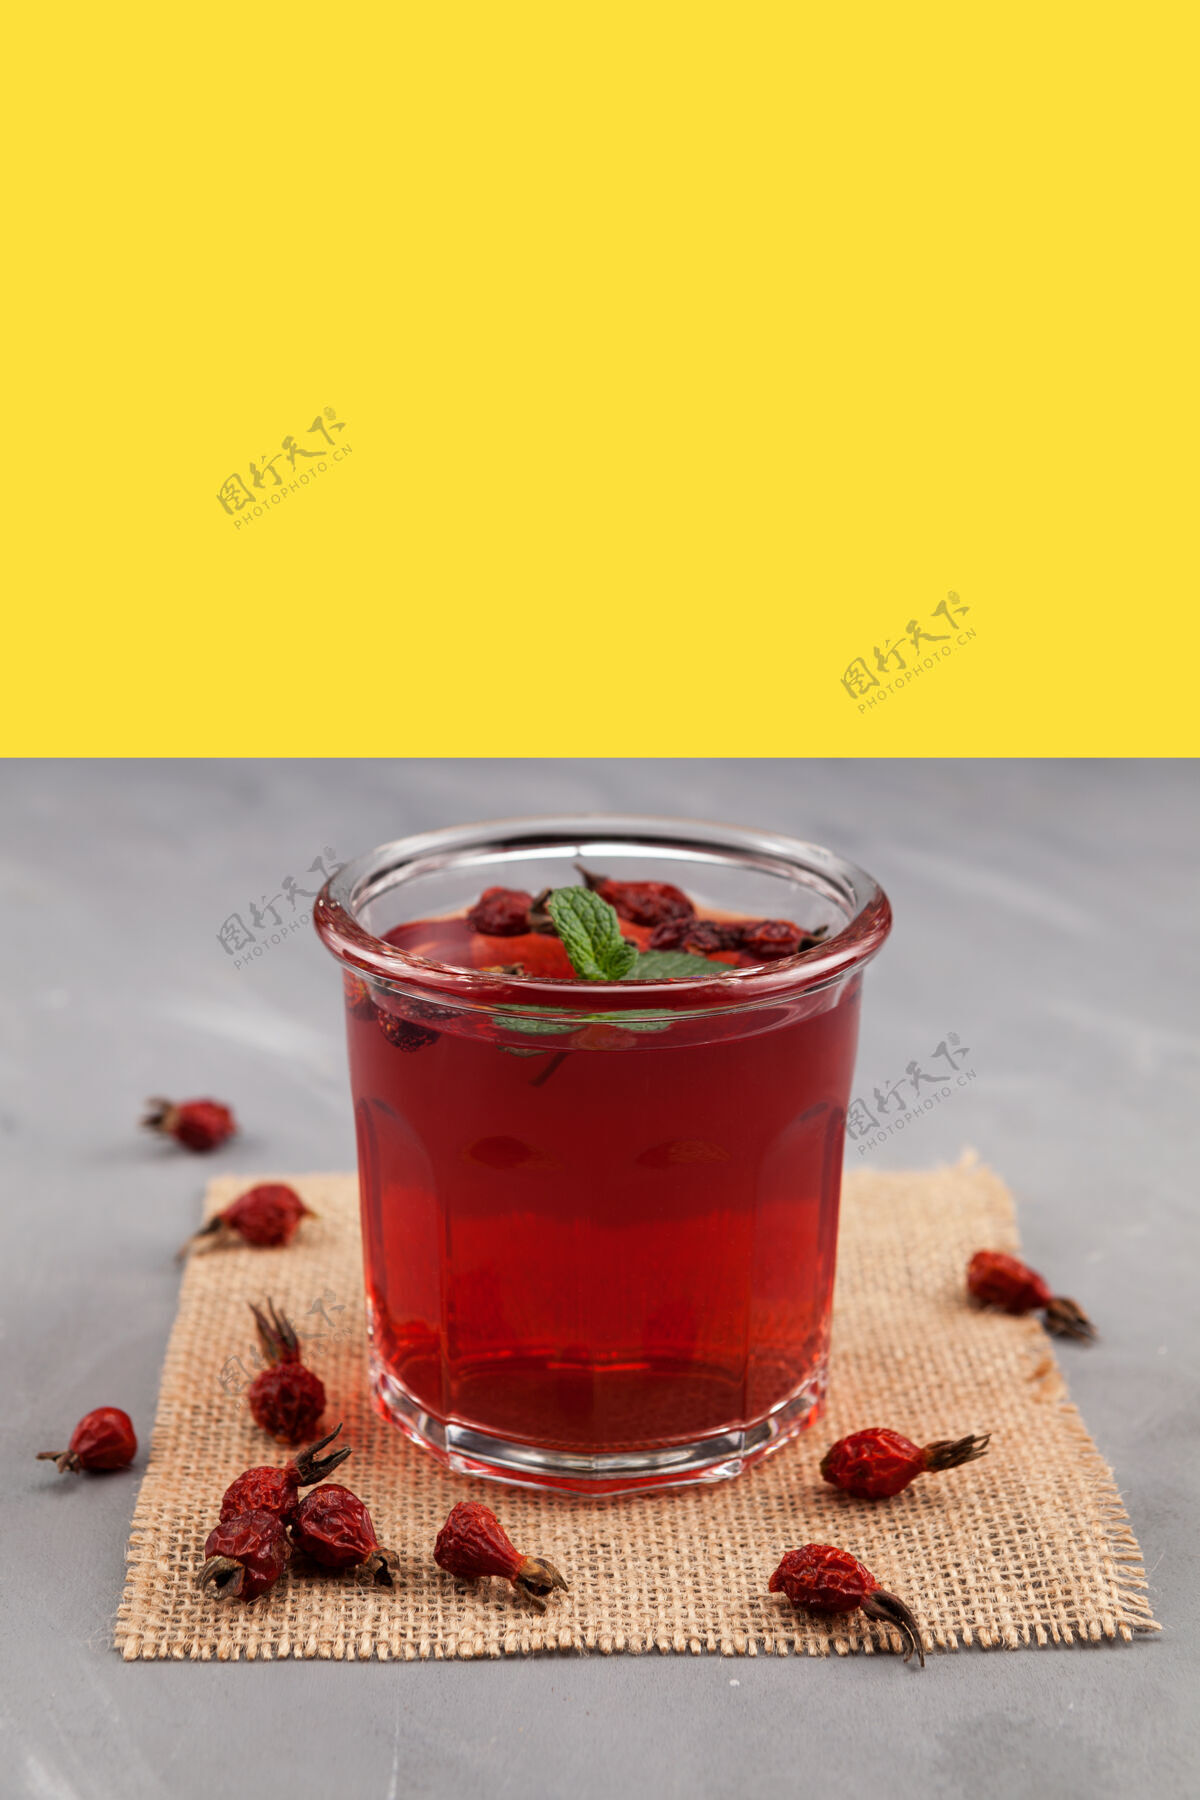 芳香一杯用木槿和玫瑰干制成的花茶 是保持免疫力的健康饮品有机糖浆干燥